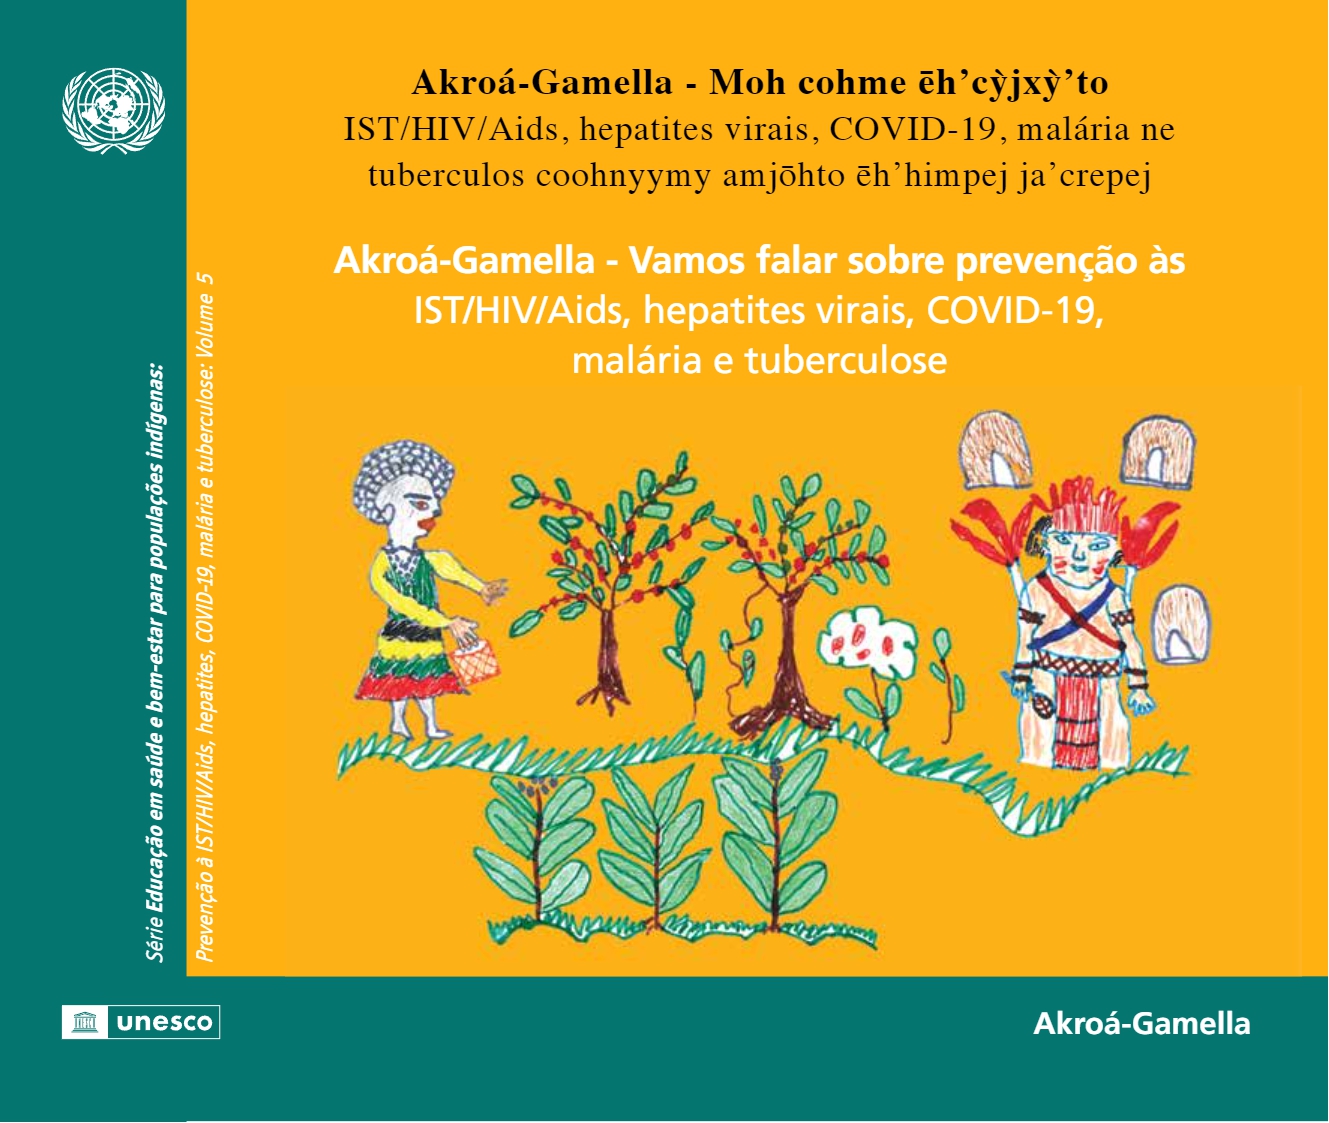 UFMA e UNESCO produzem cartilhas bilíngues para comunidades indígenas